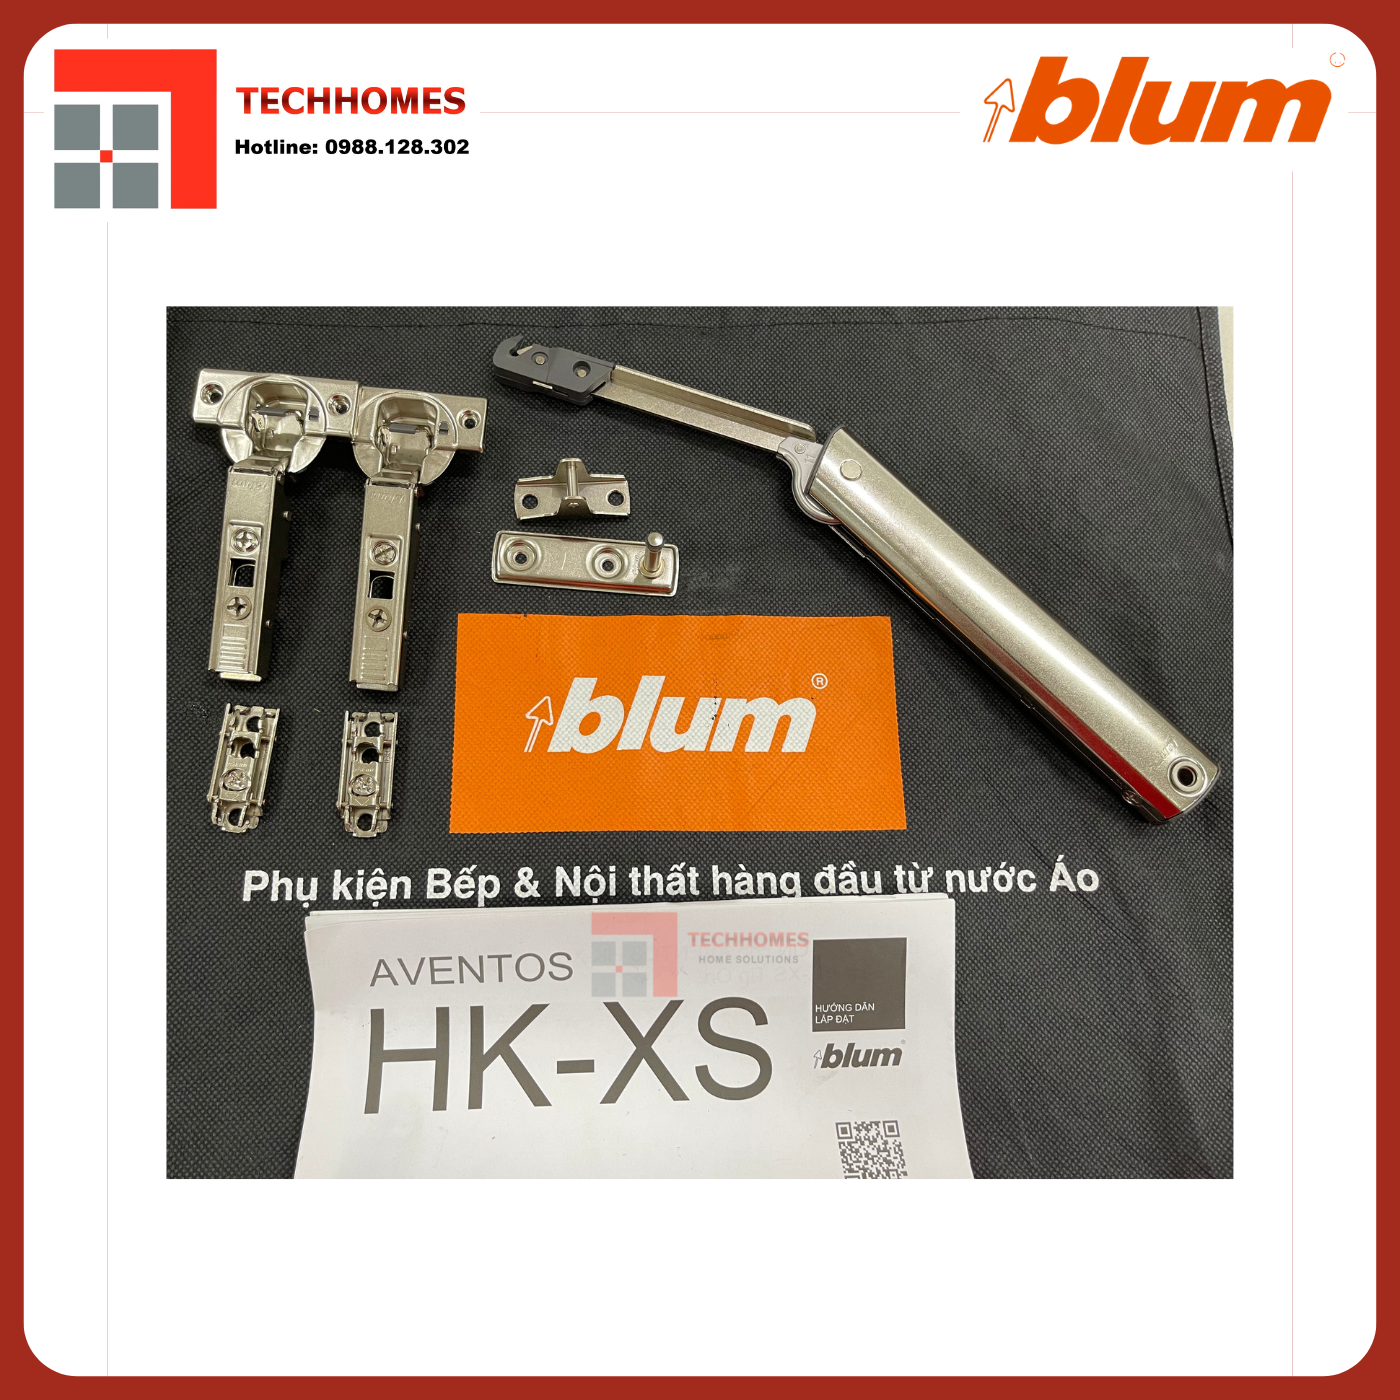 Cách nhận biết sản phẩm Blum chính hãng